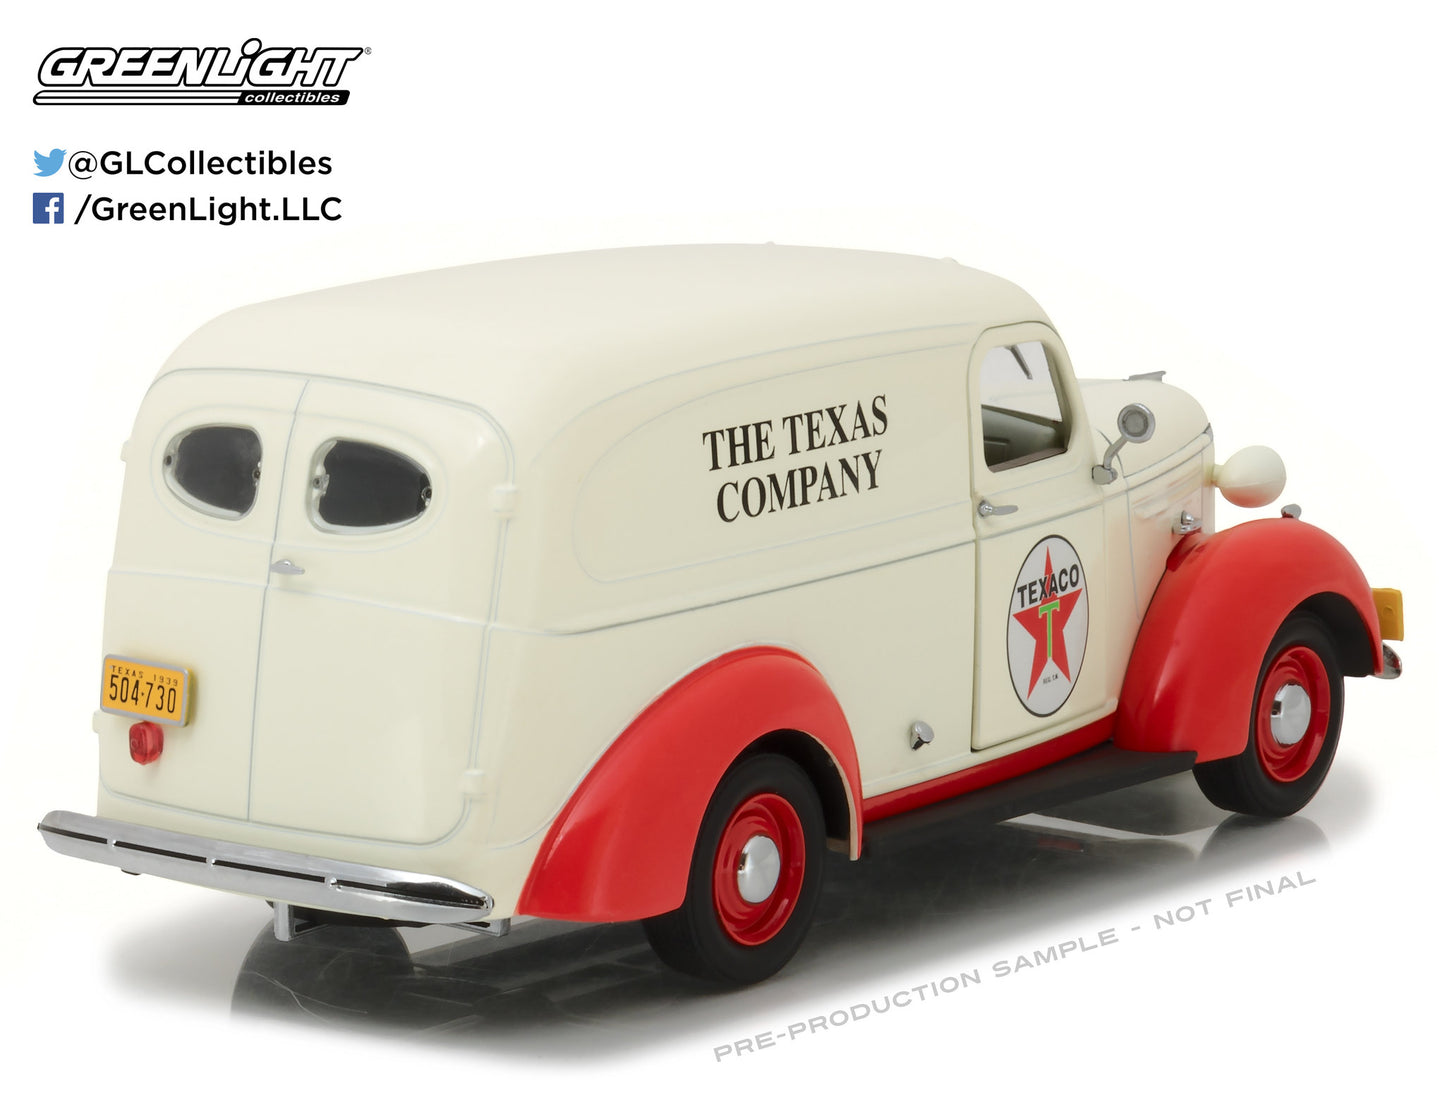 GreenLight 1:24 Running on Empty - 1939 Chevrolet Panel Truck - Texaco 18238